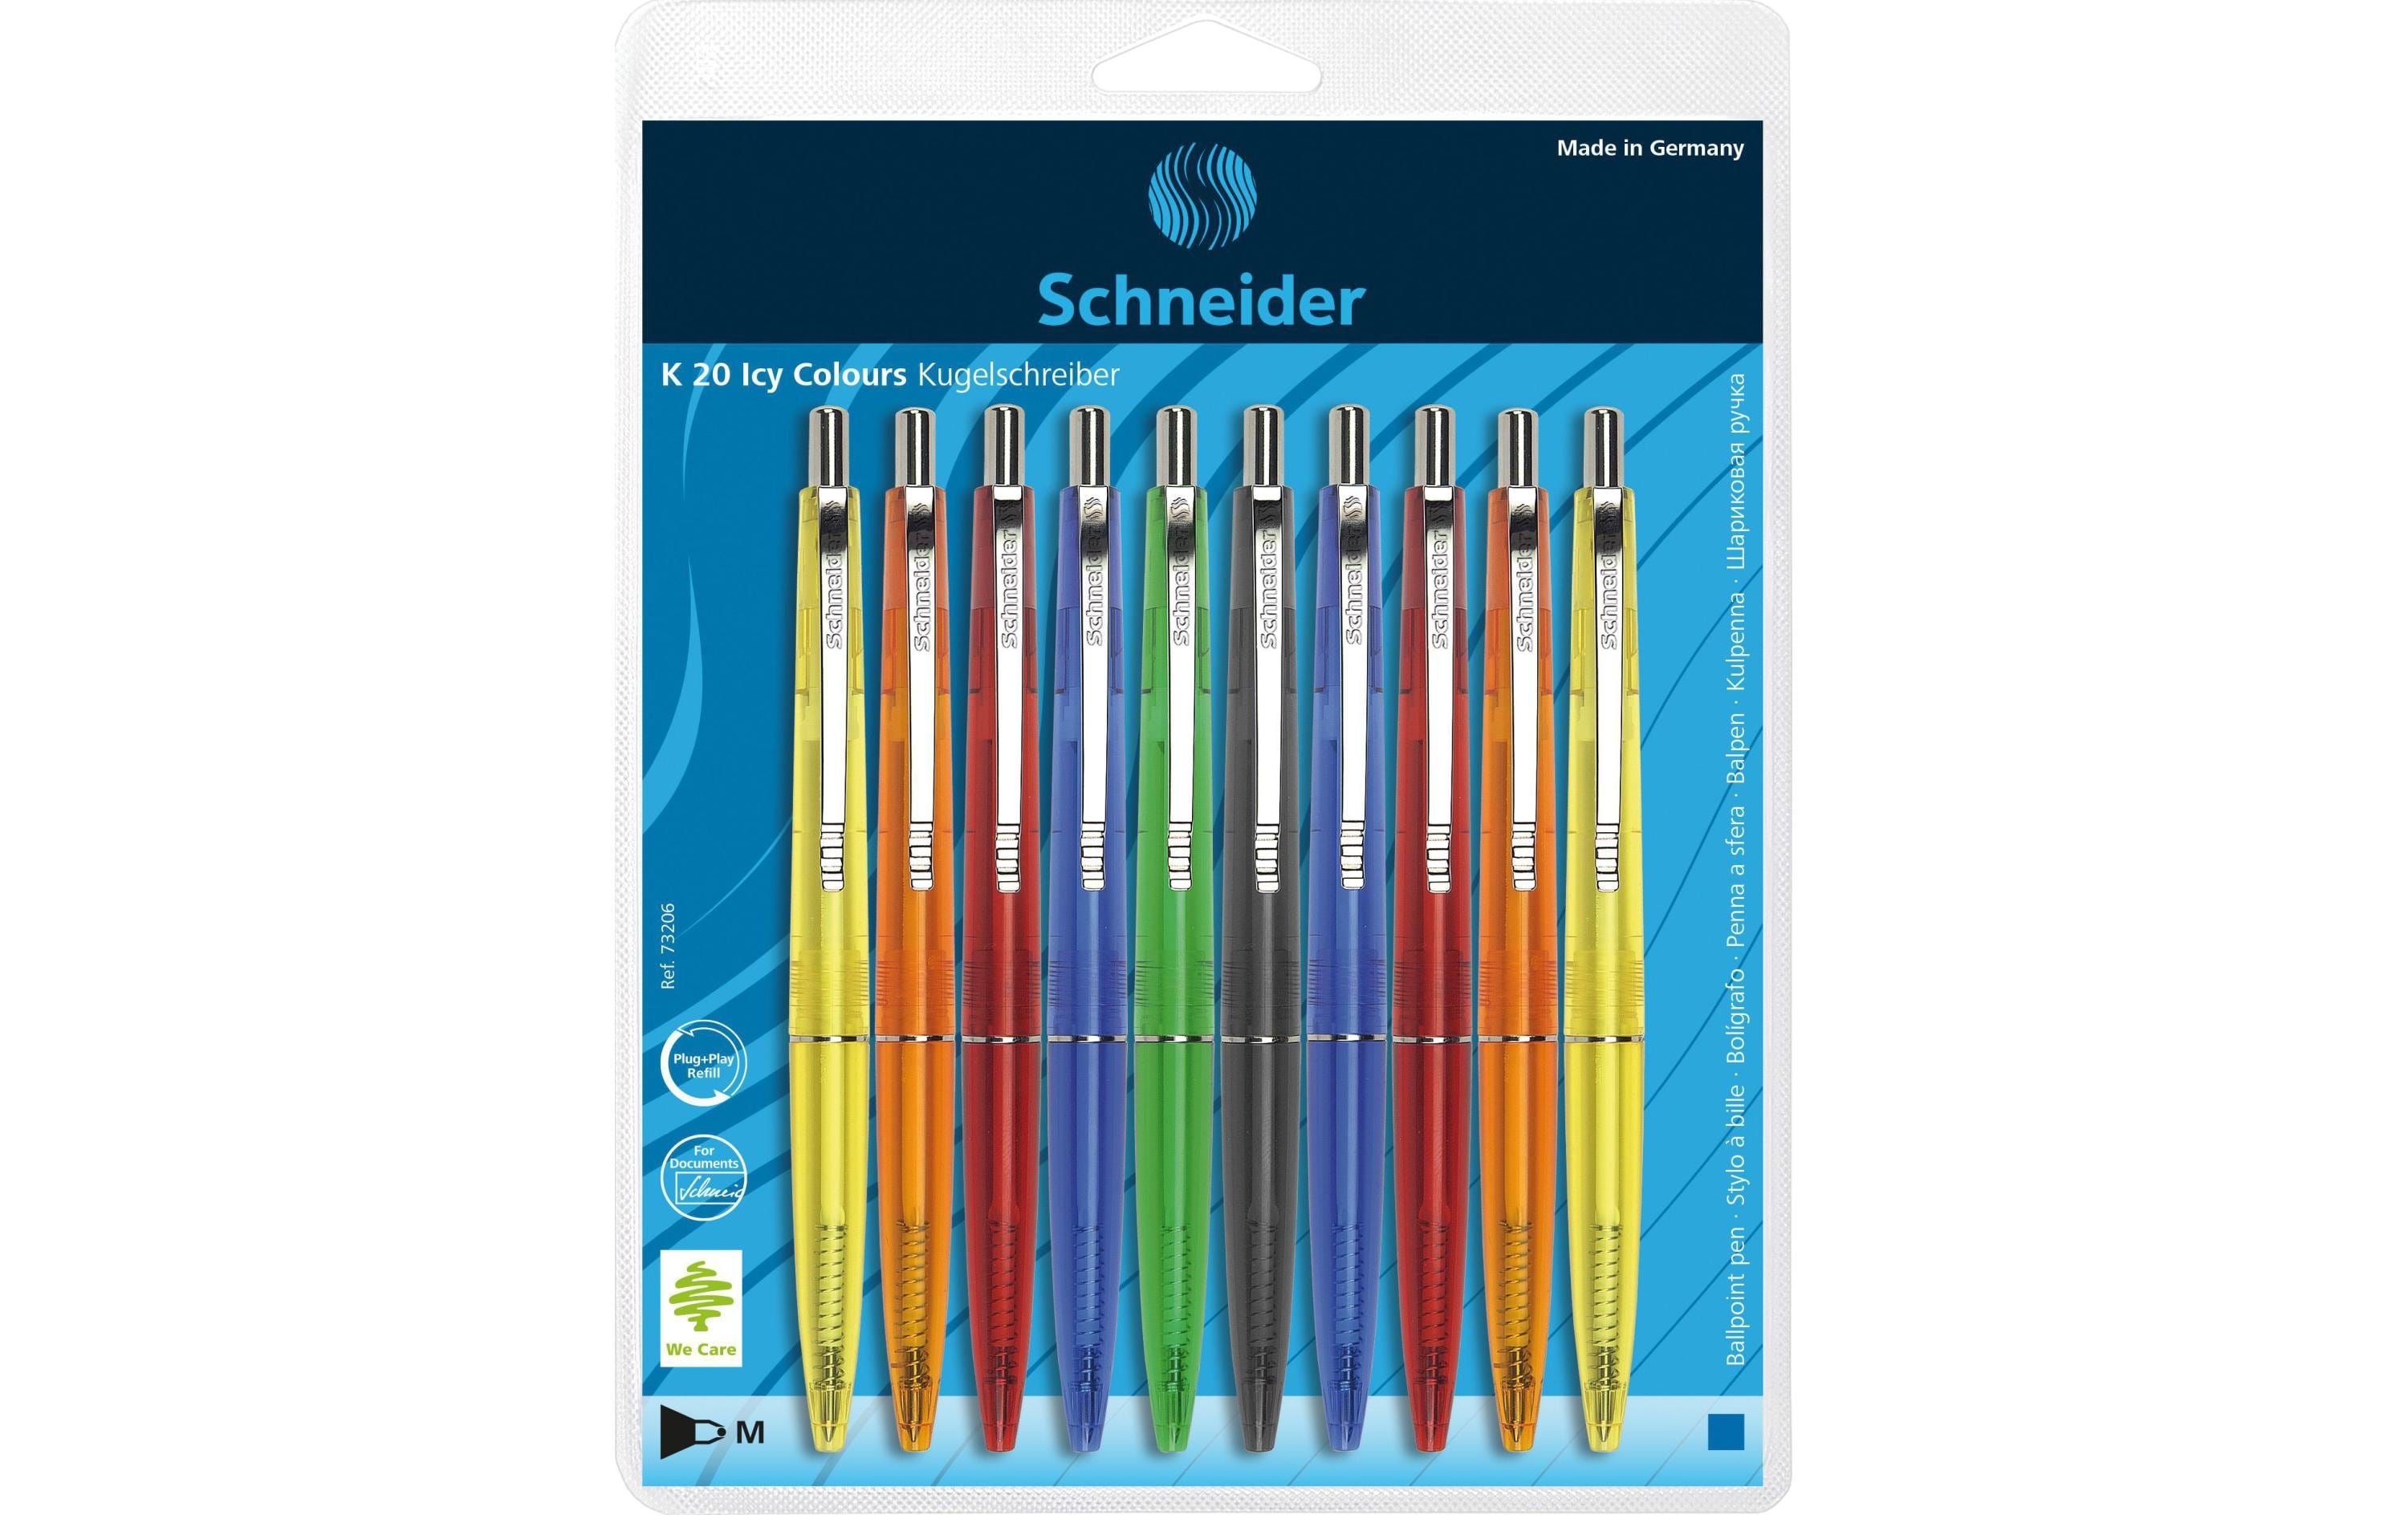 Schneider Kugelschreiber K20 ICY 0.5 mm, Mehrfarbig, 10 Stück